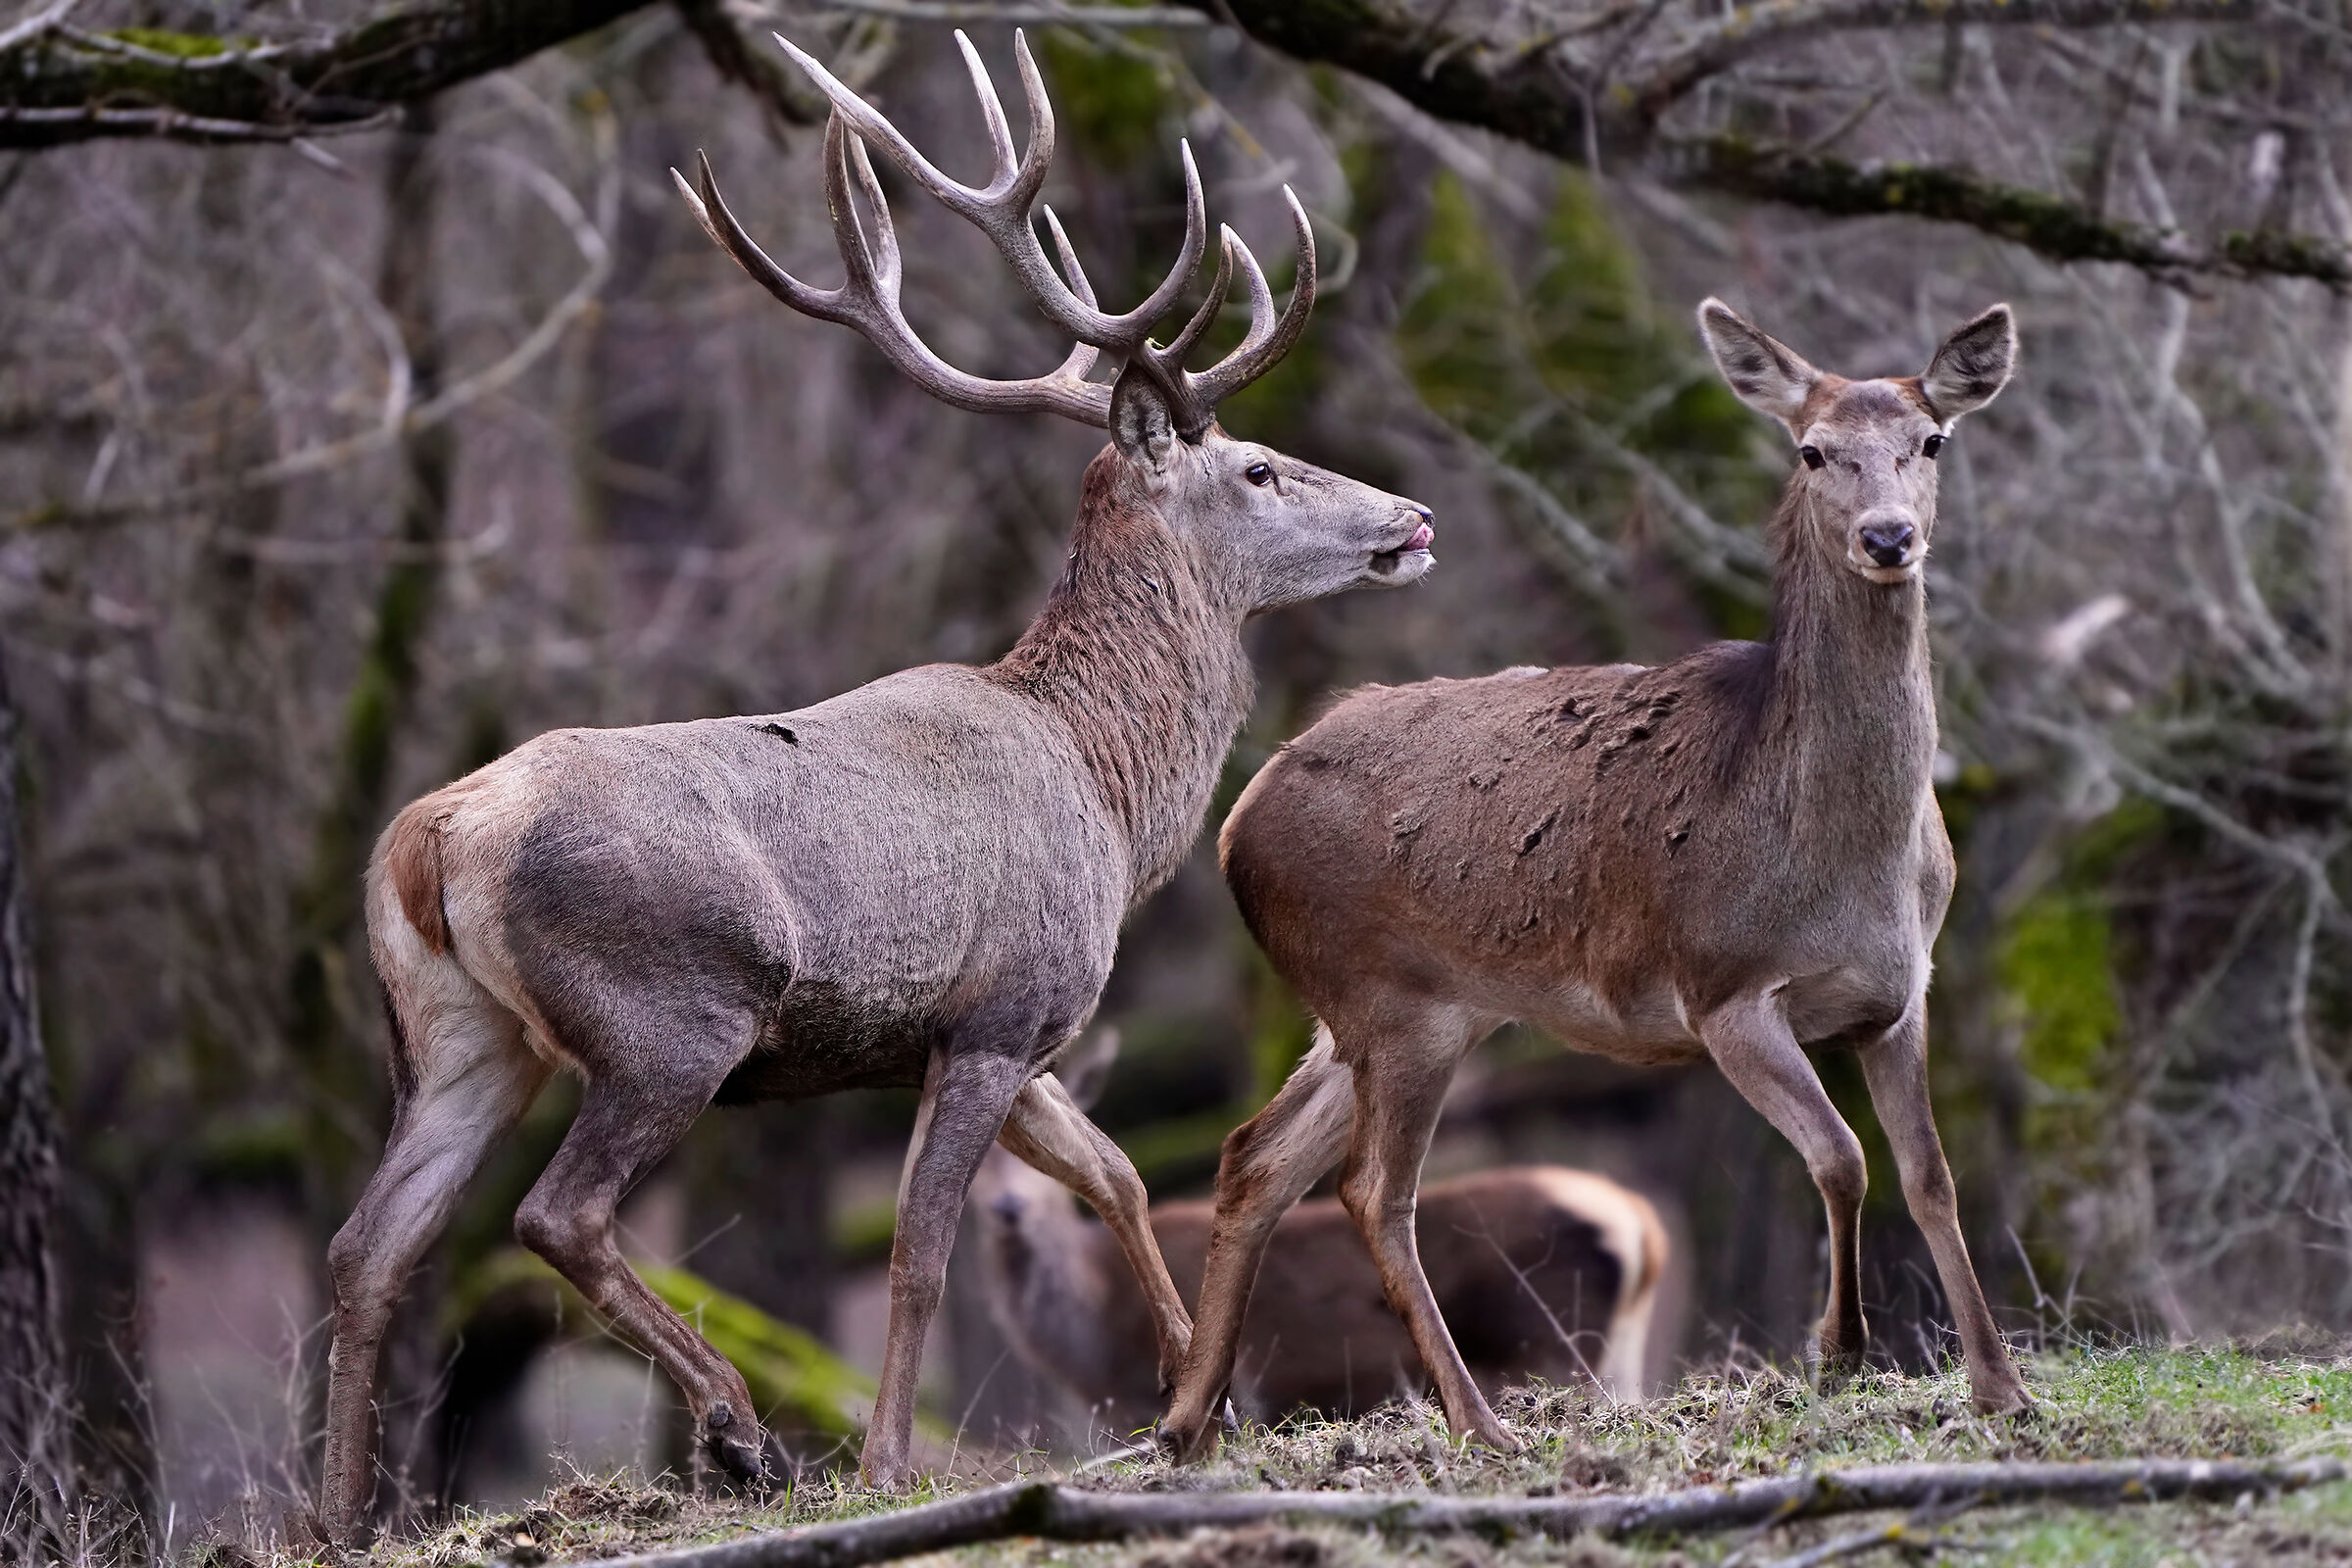 Noble deer - courtship...